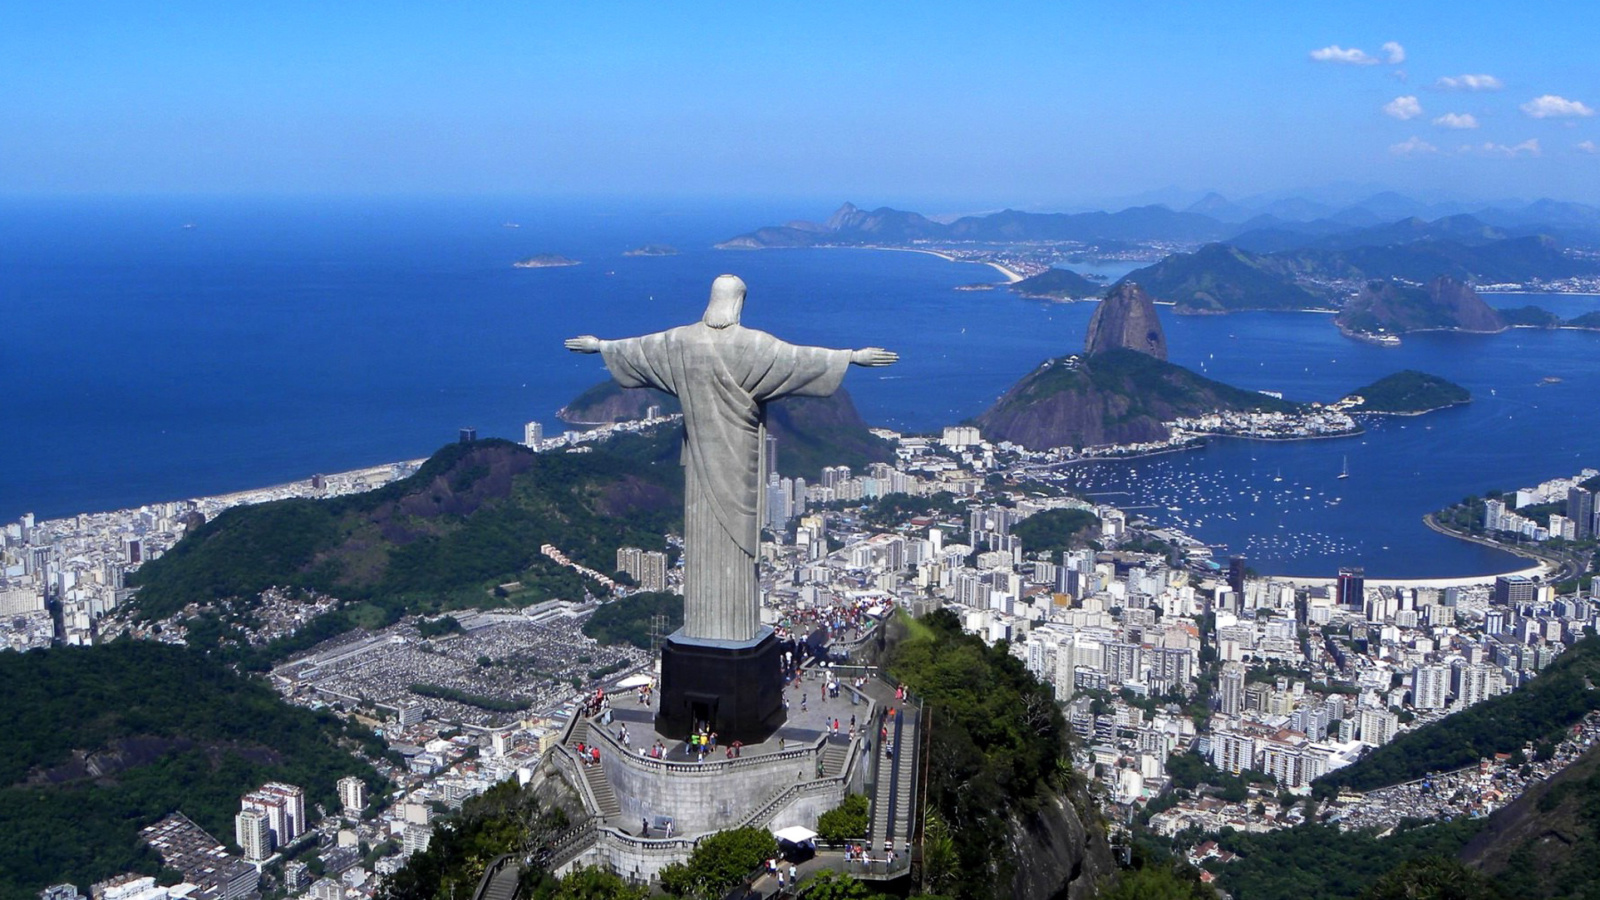 Christ the Redeemer statue in Rio de Janeiro screenshot #1 1600x900